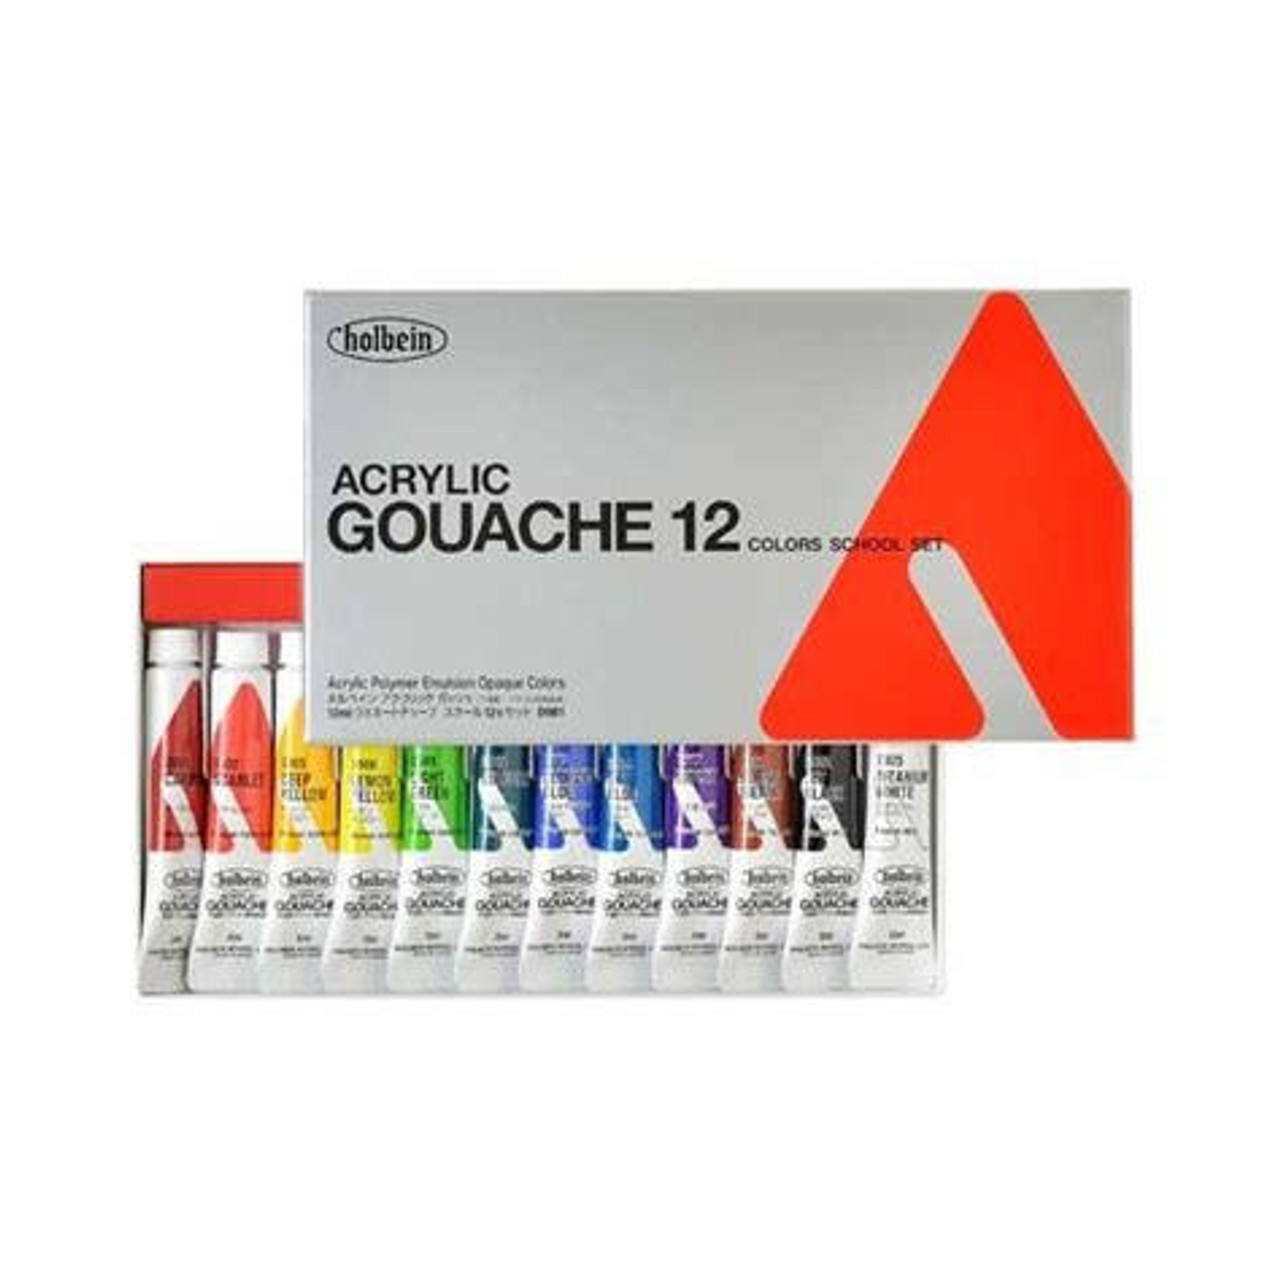 Acrylic Gouache School set of 12 - 12ml